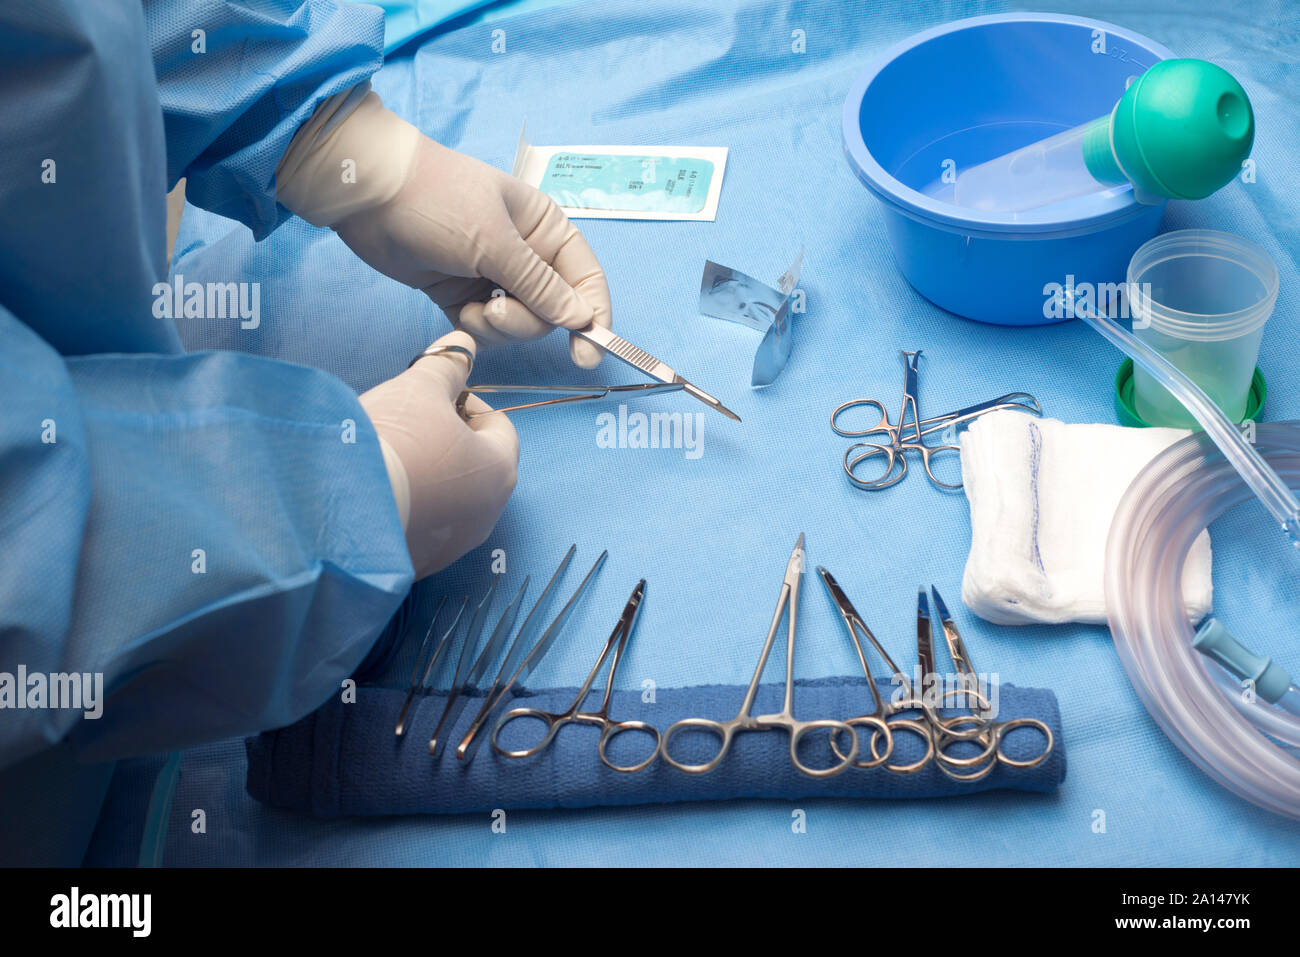 Technicien en charge chirurgicale avec lame chirurgicale Swann-morton stériles sur table. Banque D'Images